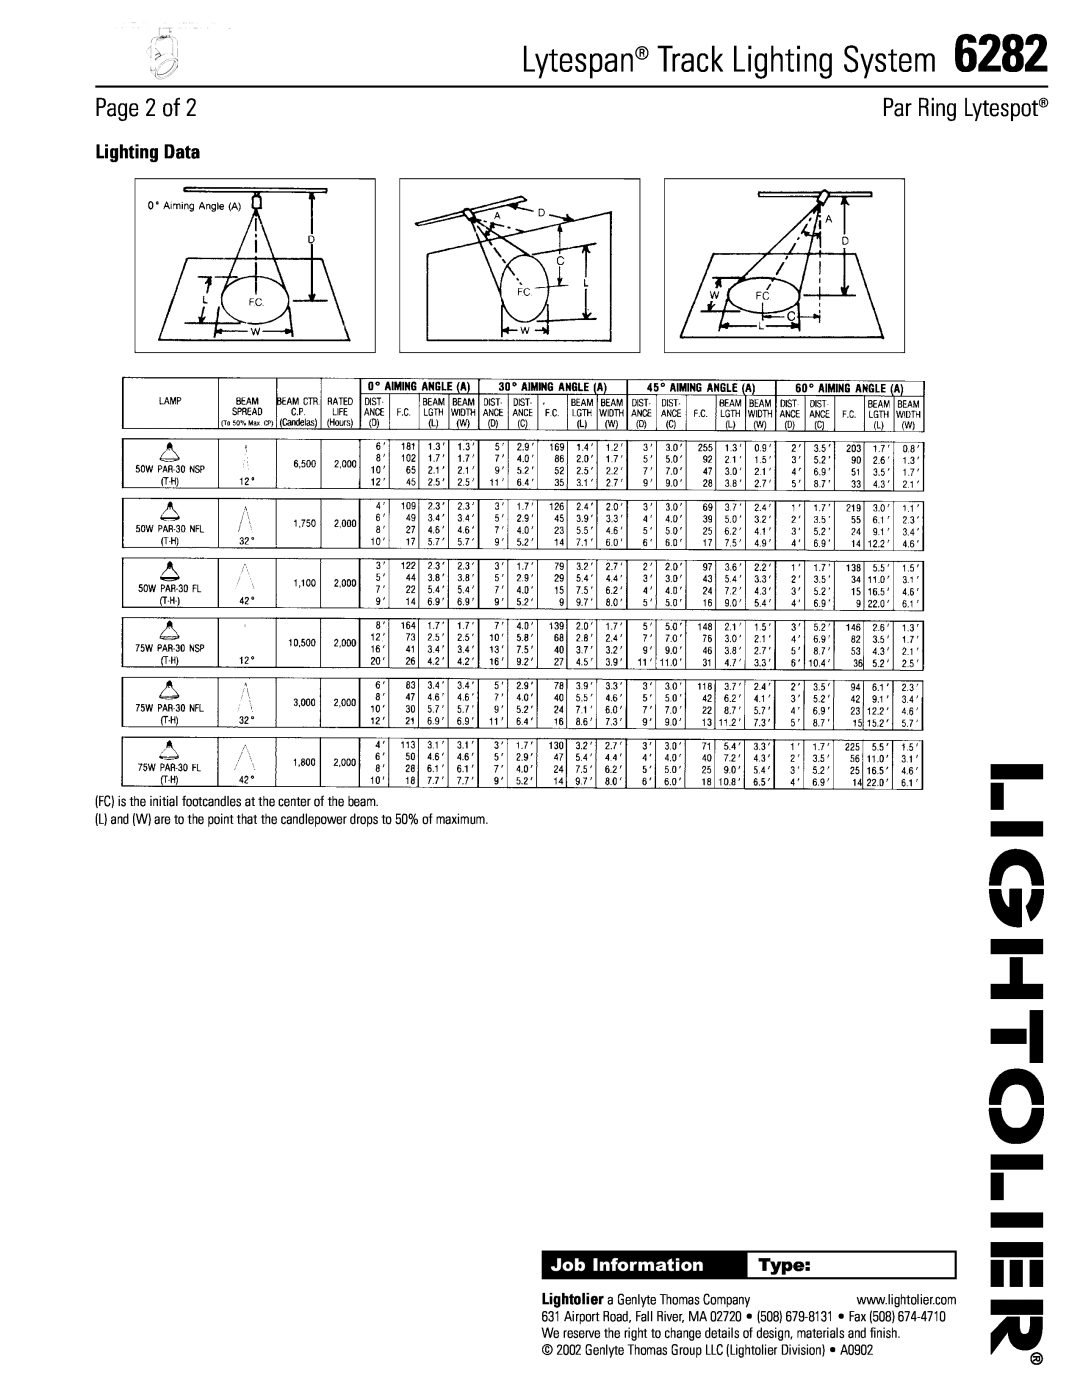 Lightolier 6282 manual Page 2 of, Lighting Data, Type, Lytespan Track Lighting System, Par Ring Lytespot, Job Information 